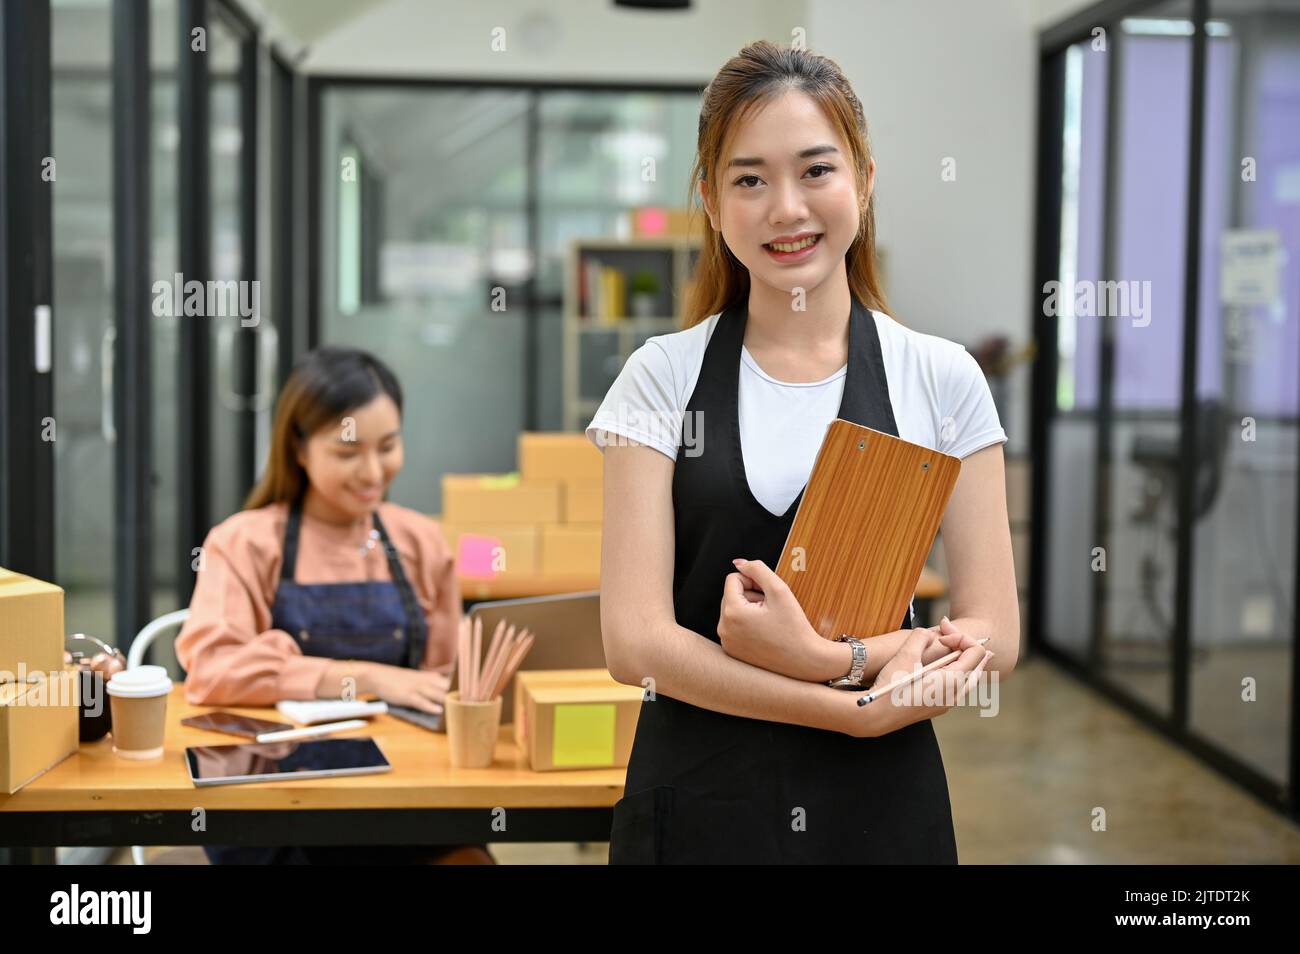 Jeune femme asiatique professionnelle et prospère, entrepreneur en PME ou entreprise de commerce électronique, se tenant devant sa salle des stocks. Banque D'Images